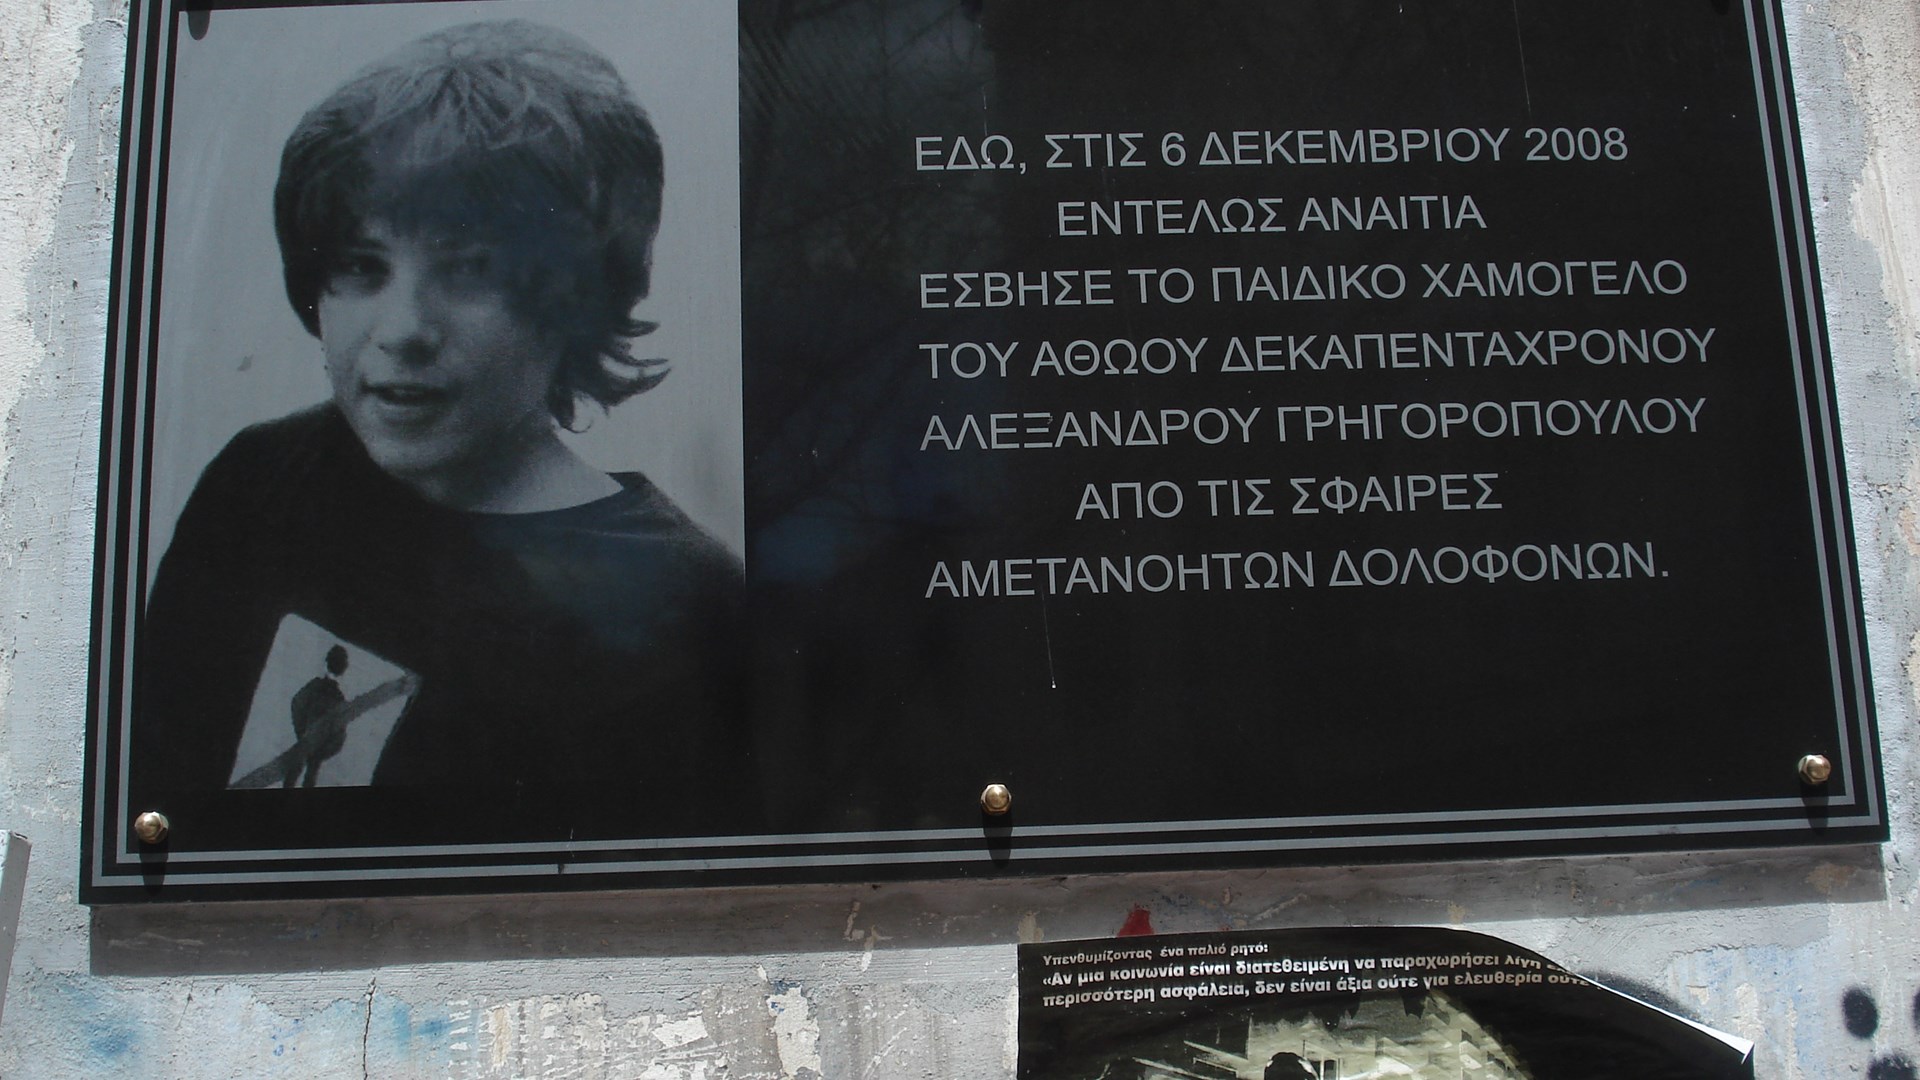 Αφιέρωμα enikos.gr: Αλέξανδρος Γρηγορόπουλος: Εννέα χρόνια από τη δολοφονία που “μάτωσε” τη χώρα